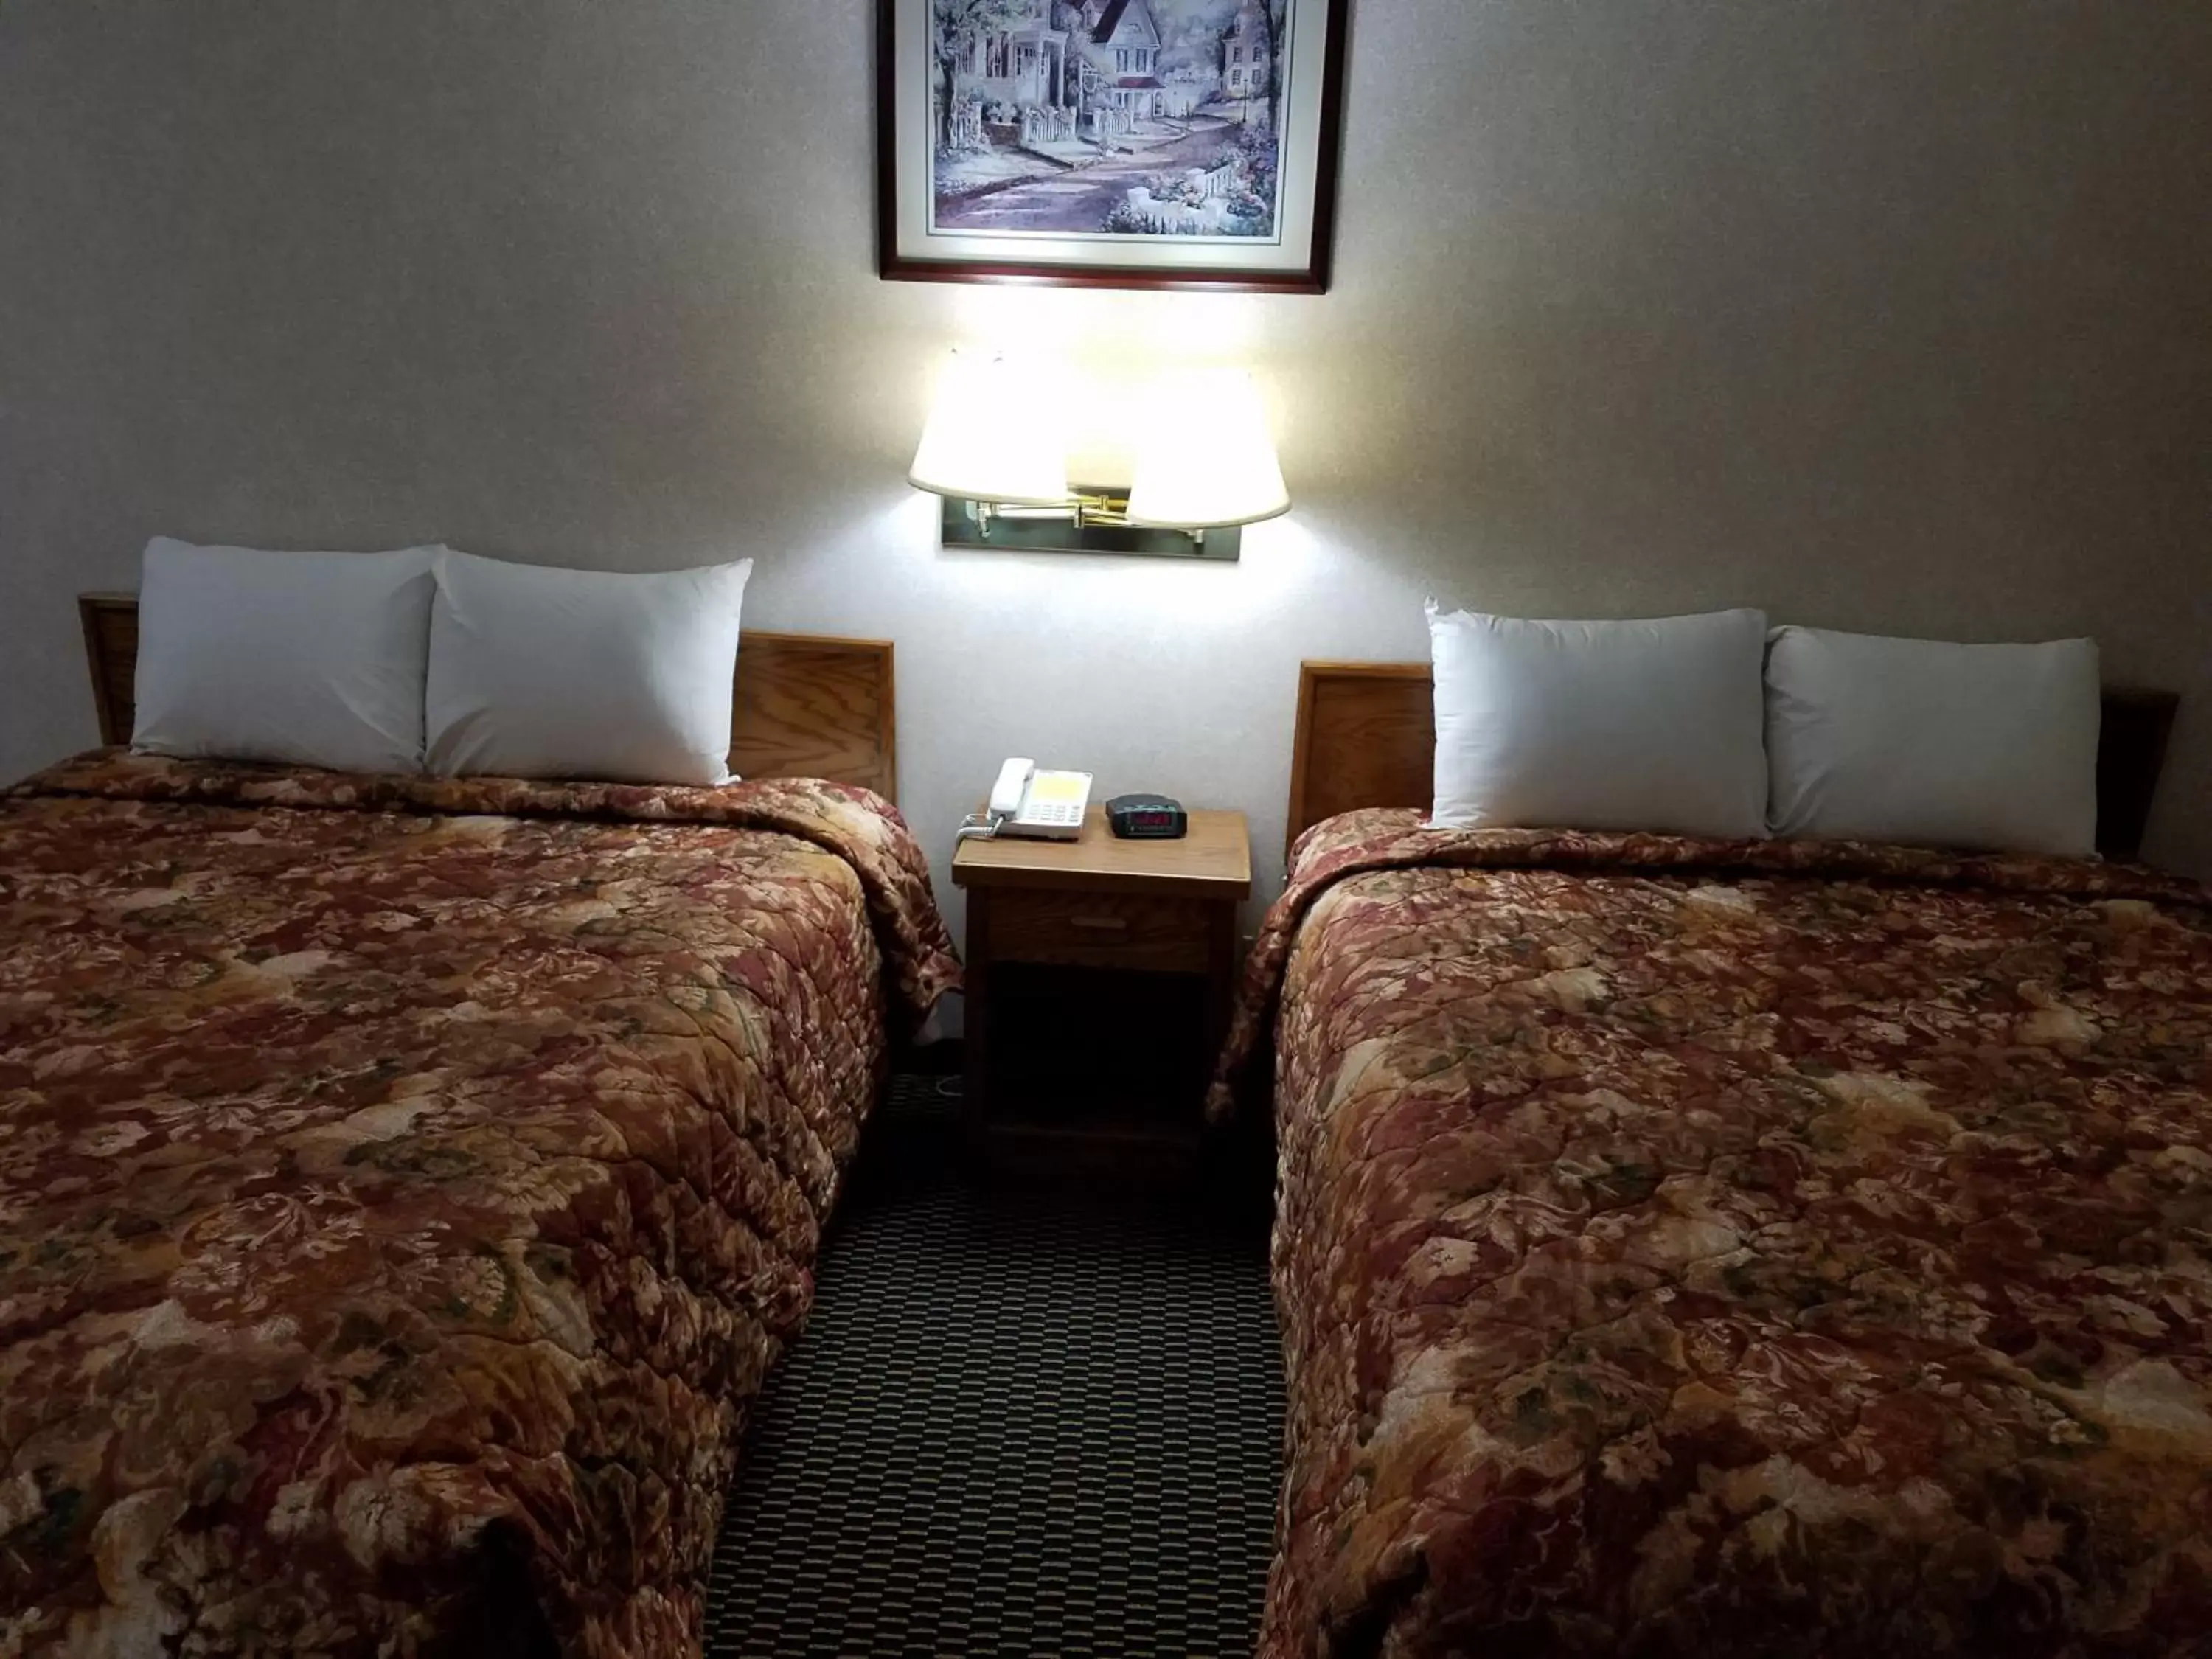 Bed, Room Photo in Rodeway Inn Blair